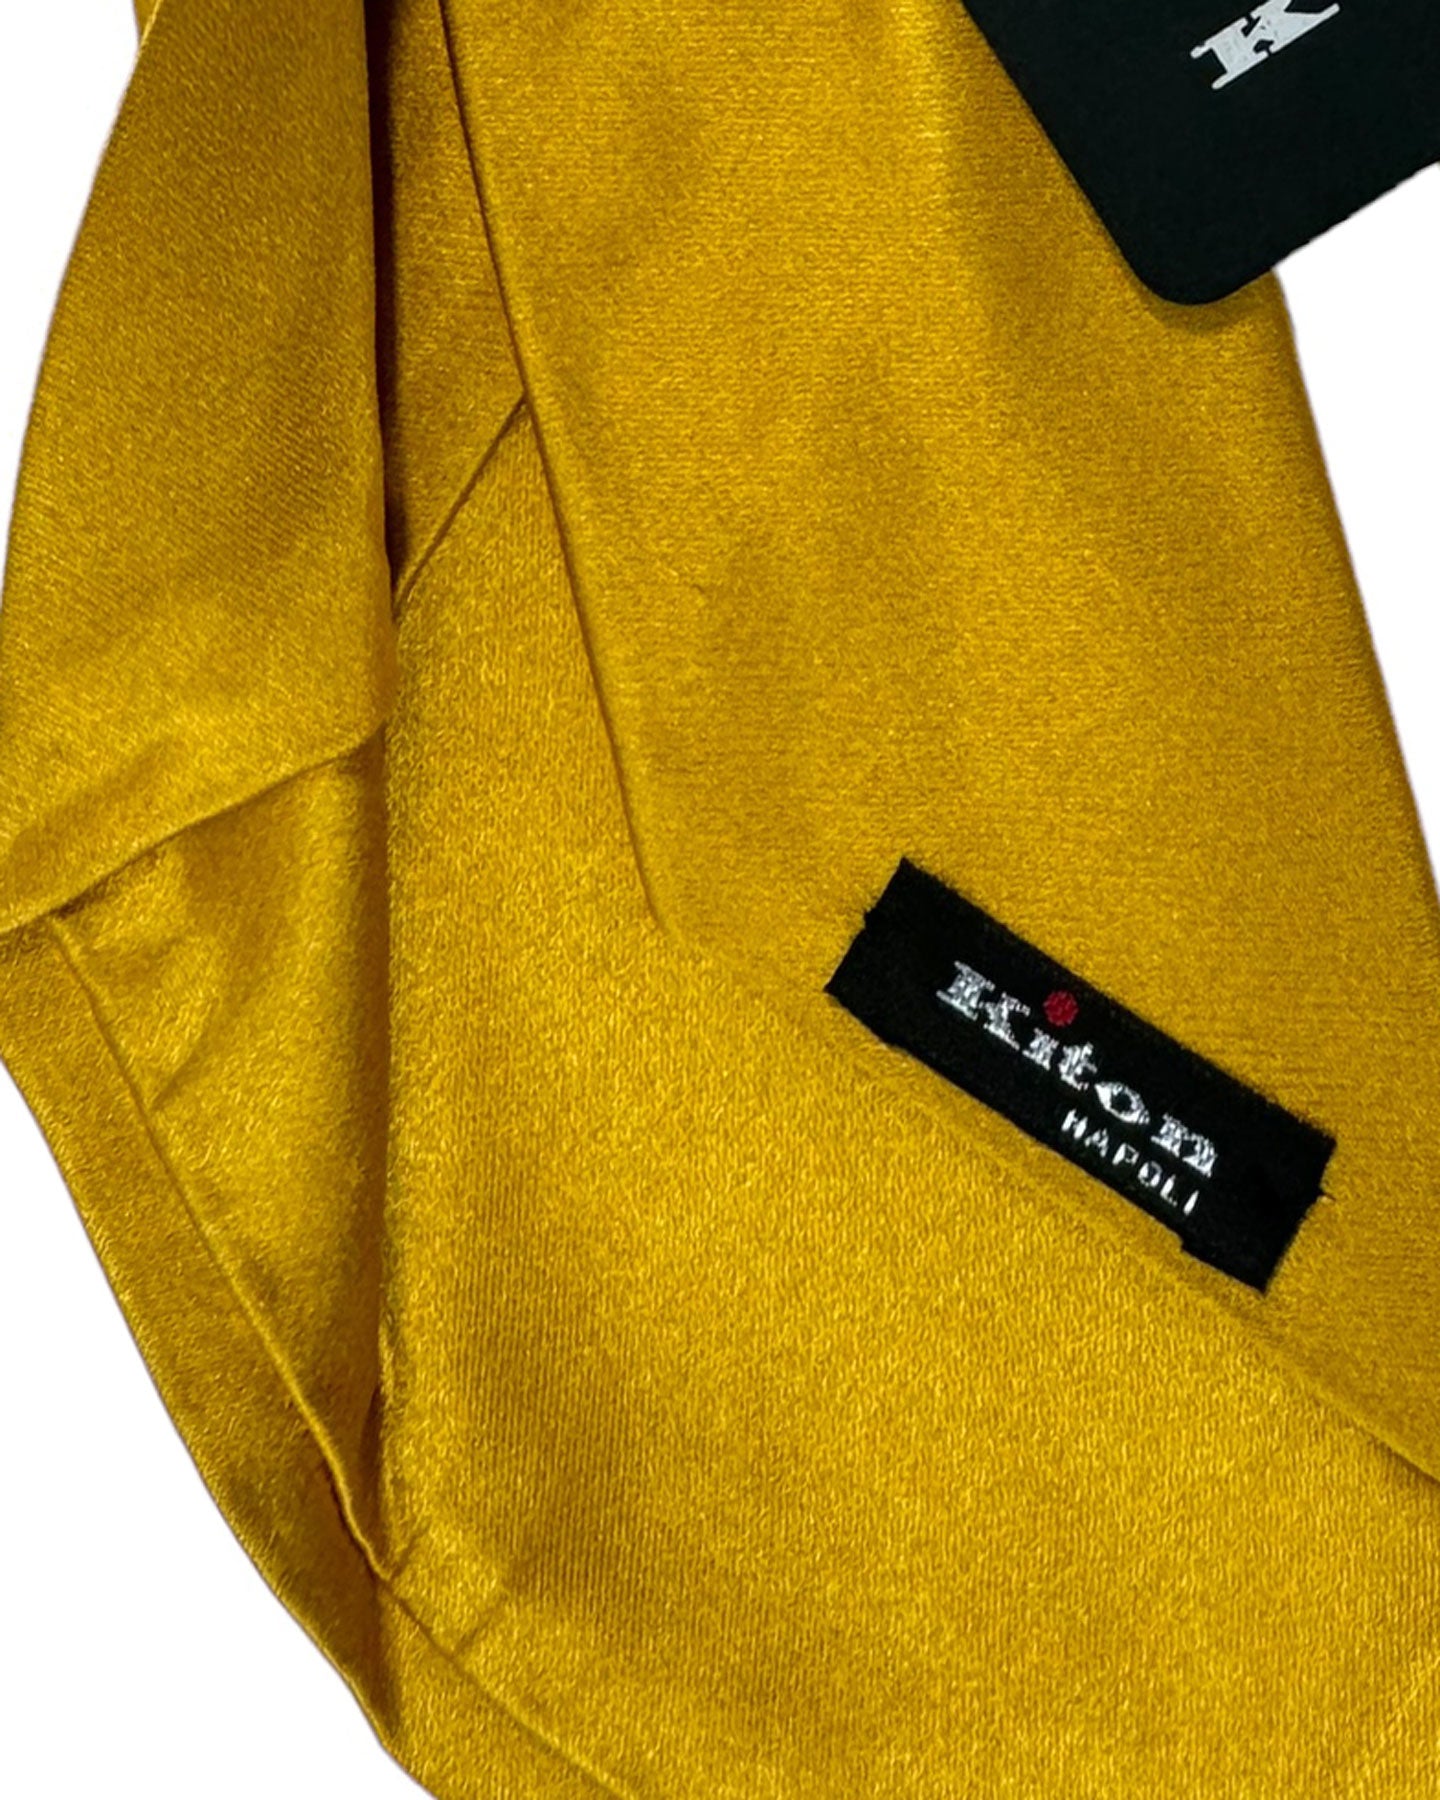 Kiton Silk Tie Mustard Solid Design - Sevenfold Necktie